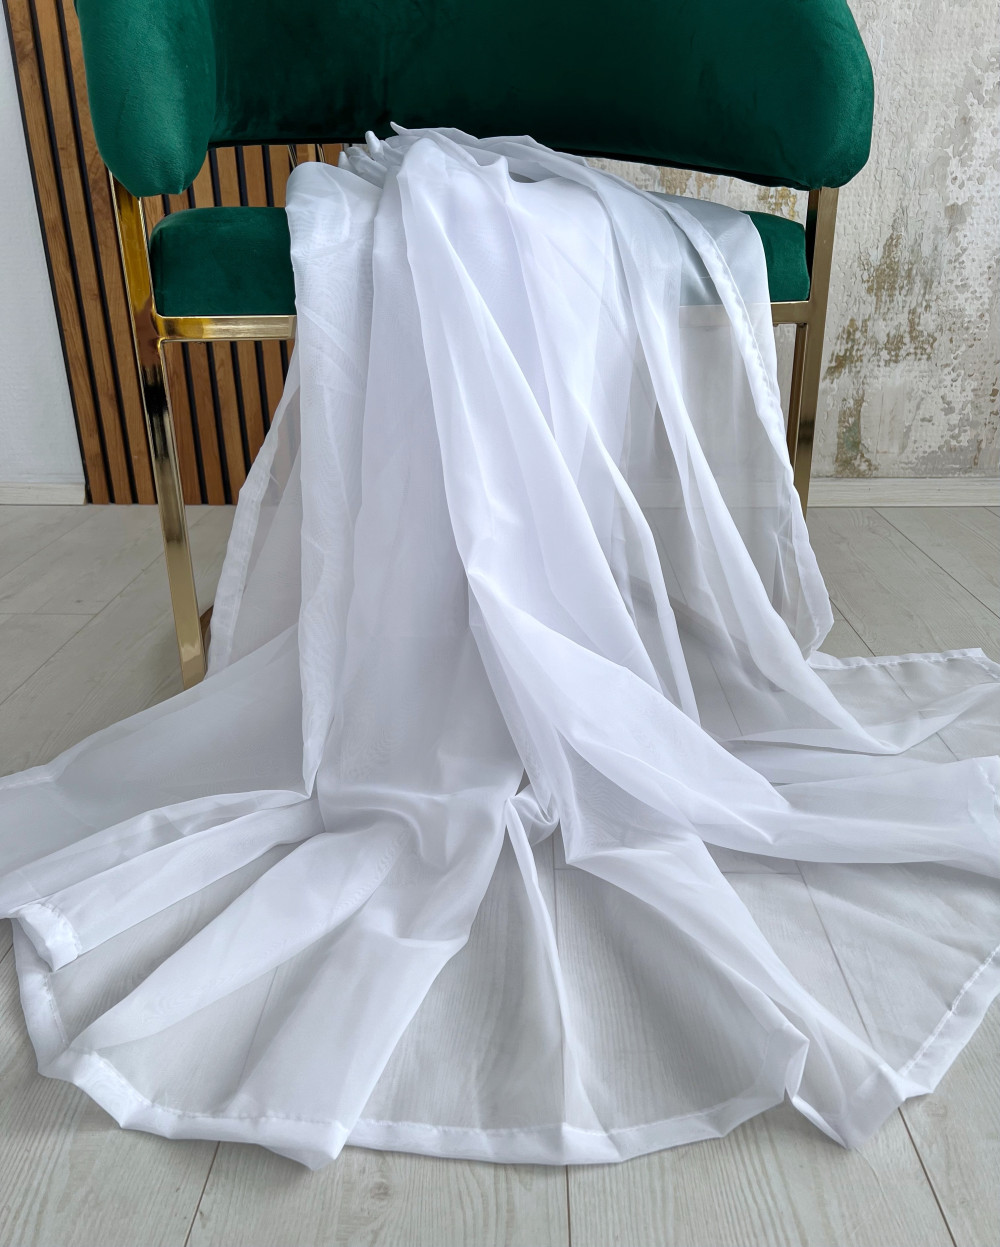   Készre varrt függöny Organza luxury fehér 300x100cm